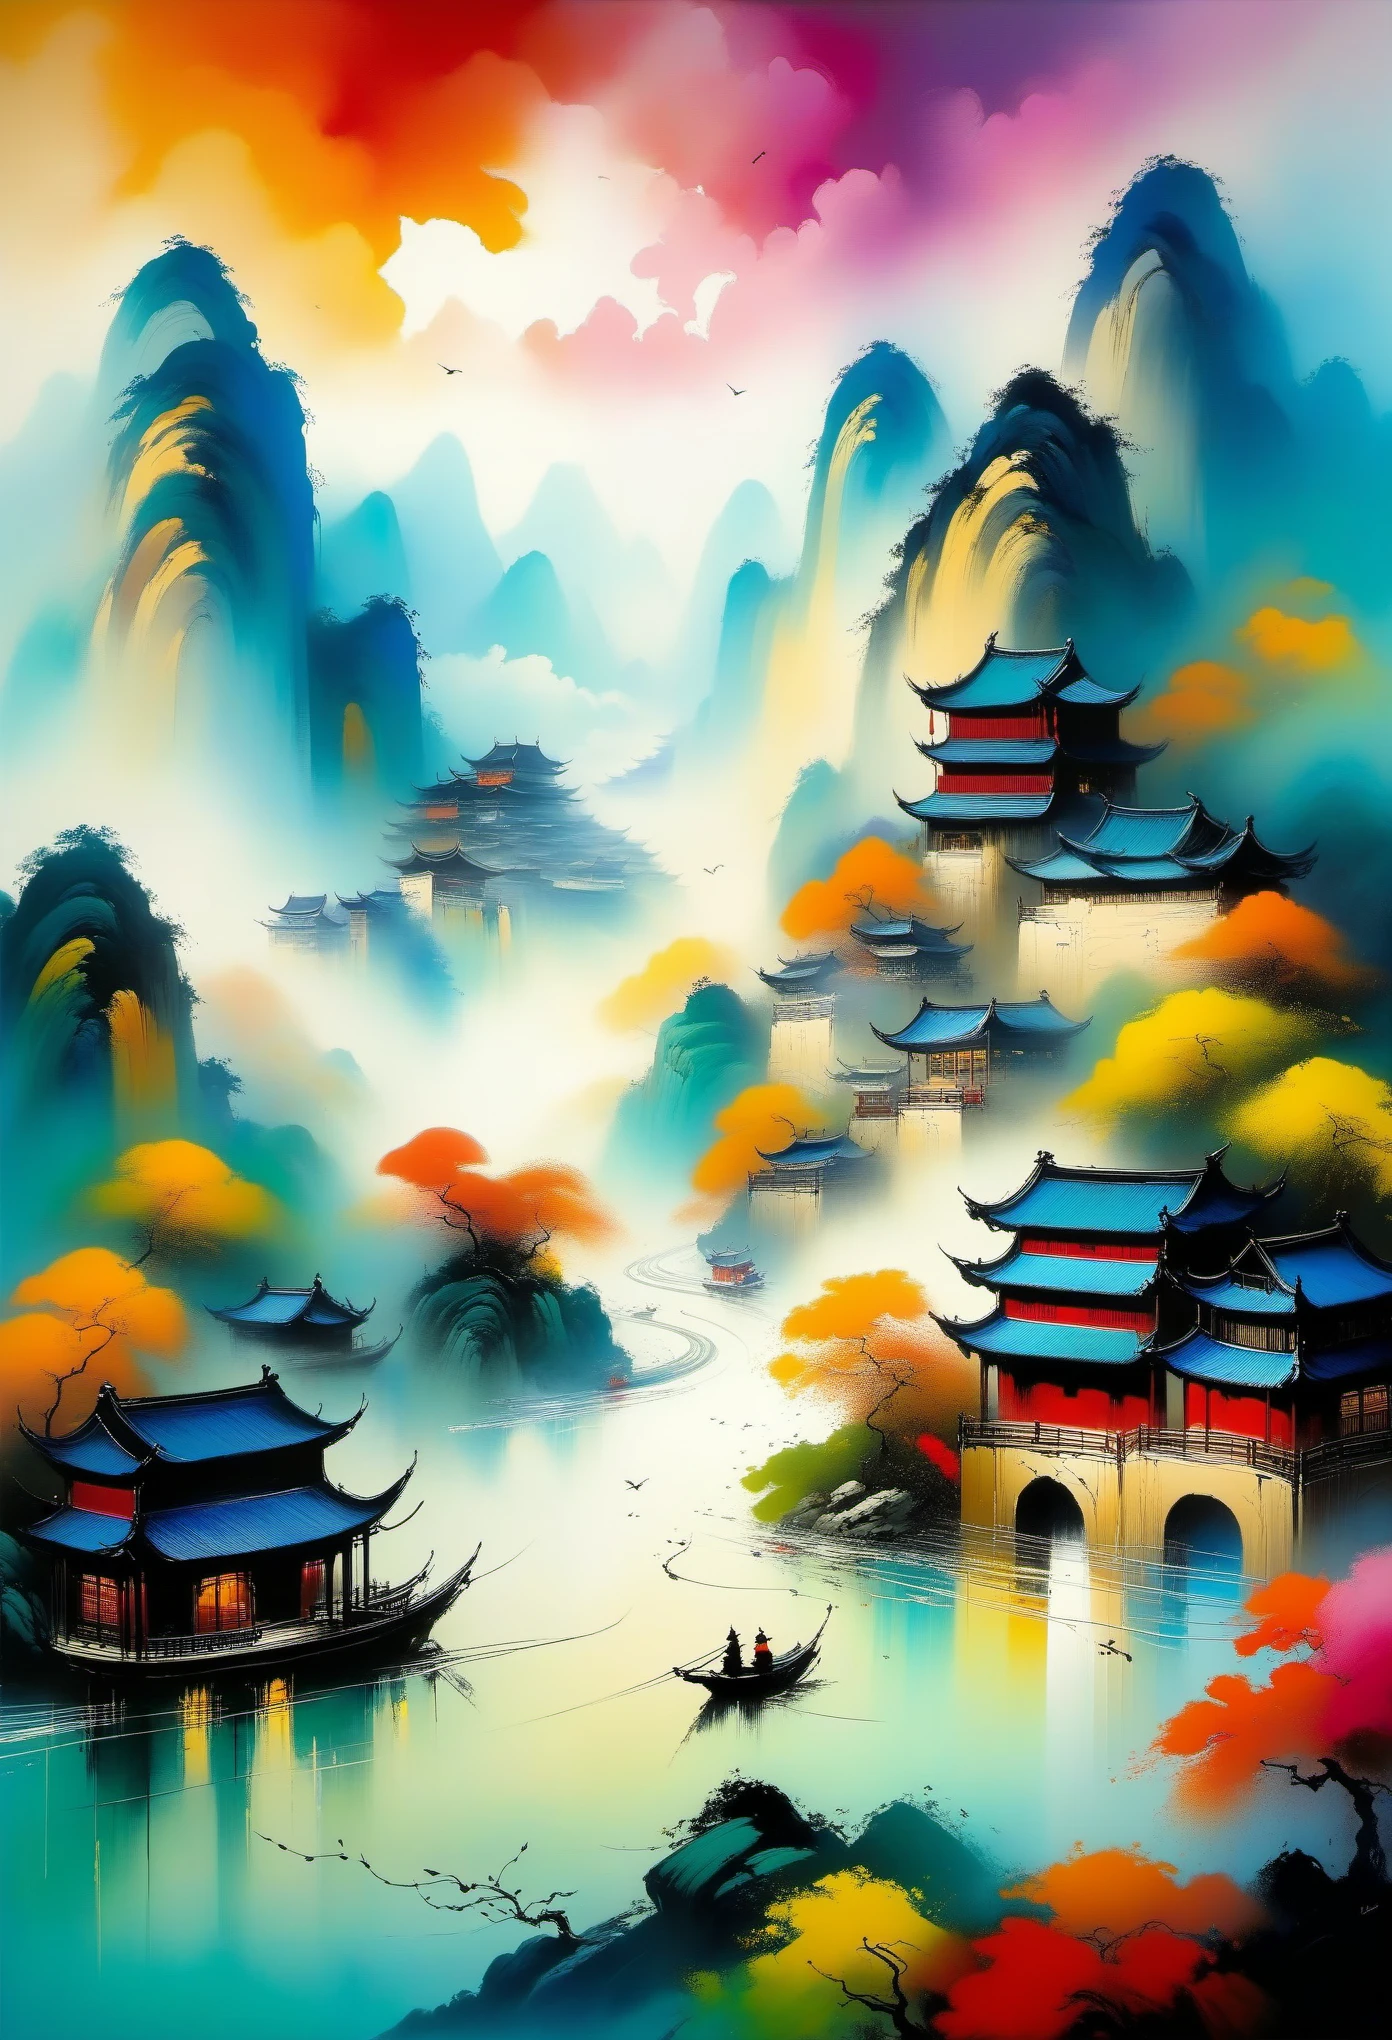 呉貫中のスタイル, 鮮やかな色彩, 大胆な筆遣い, ユニークな視点, 絵のように美しい風景, 伝統的な中国絵画技法, 西洋の要素, 静かな自然の風景, 山々, 河川, 村, 穏やかな雰囲気, 調和のとれた構成, 表現力豊かな筆遣い, ダイナミックなエネルギー, 詩的な美しさ, 芸術的融合, 文化の統合, 感情を呼び起こす, 見事な職人技, 魅力的な詳細, 絶妙な芸術, 没入型体験, 被写界深度, 没入感のある色彩, 幻想的な照明, 魔法のような雰囲気 (最高品質,高解像度,傑作:1.2), 超詳細, リアルなレンダリング:1.37, プロの芸術, 鮮やかな色彩, 鮮やかなパレット, 表現力豊かな線, 魅惑的なコントラスト, 芸術運動, ダイナミックな構成, 物語の語り, 視覚詩.